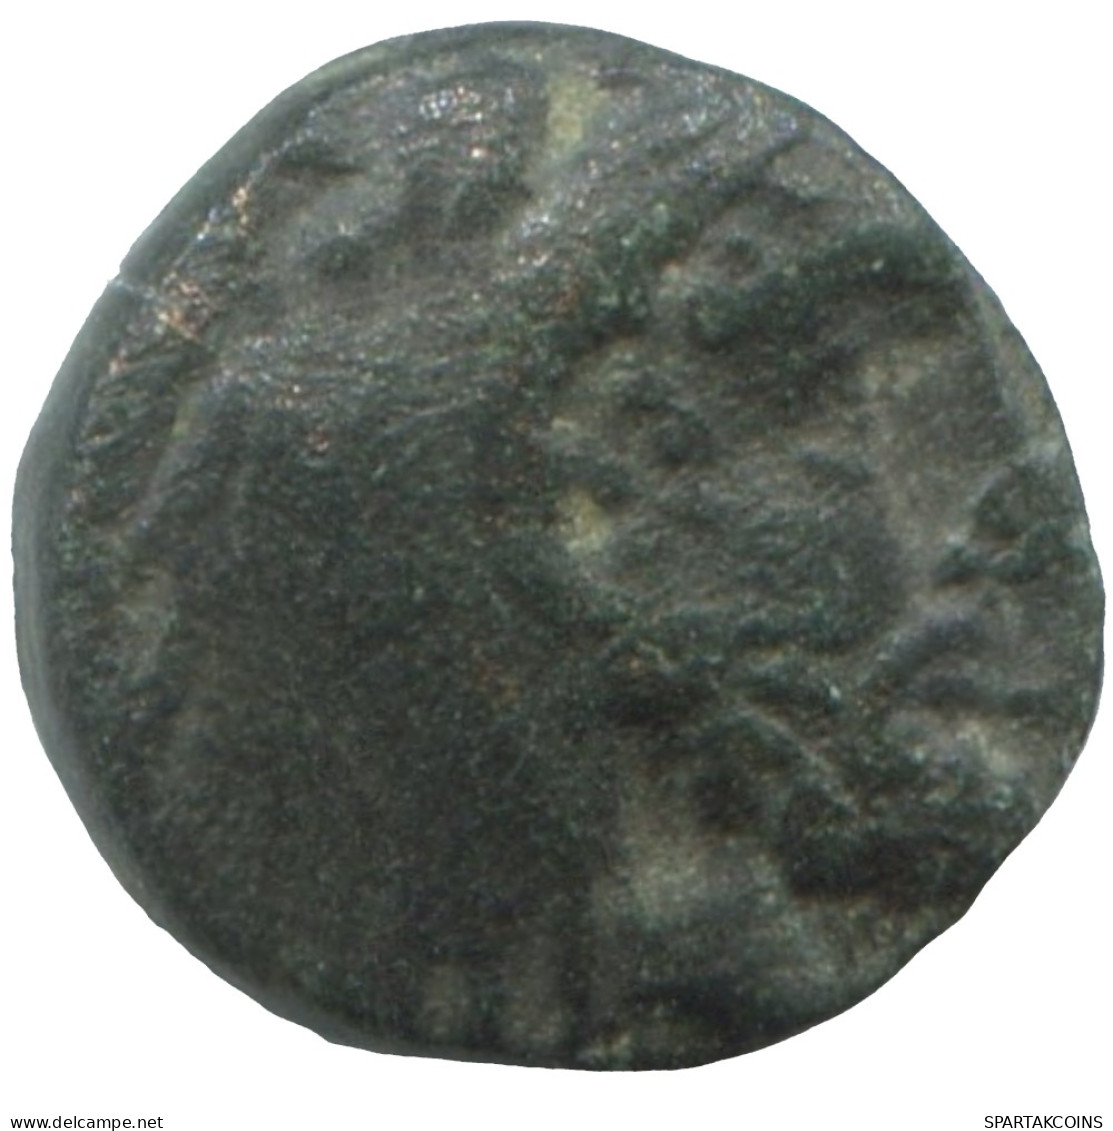 Ancient Antike Authentische Original GRIECHISCHE Münze 1.1g/10mm #SAV1254.11.D.A - Griechische Münzen